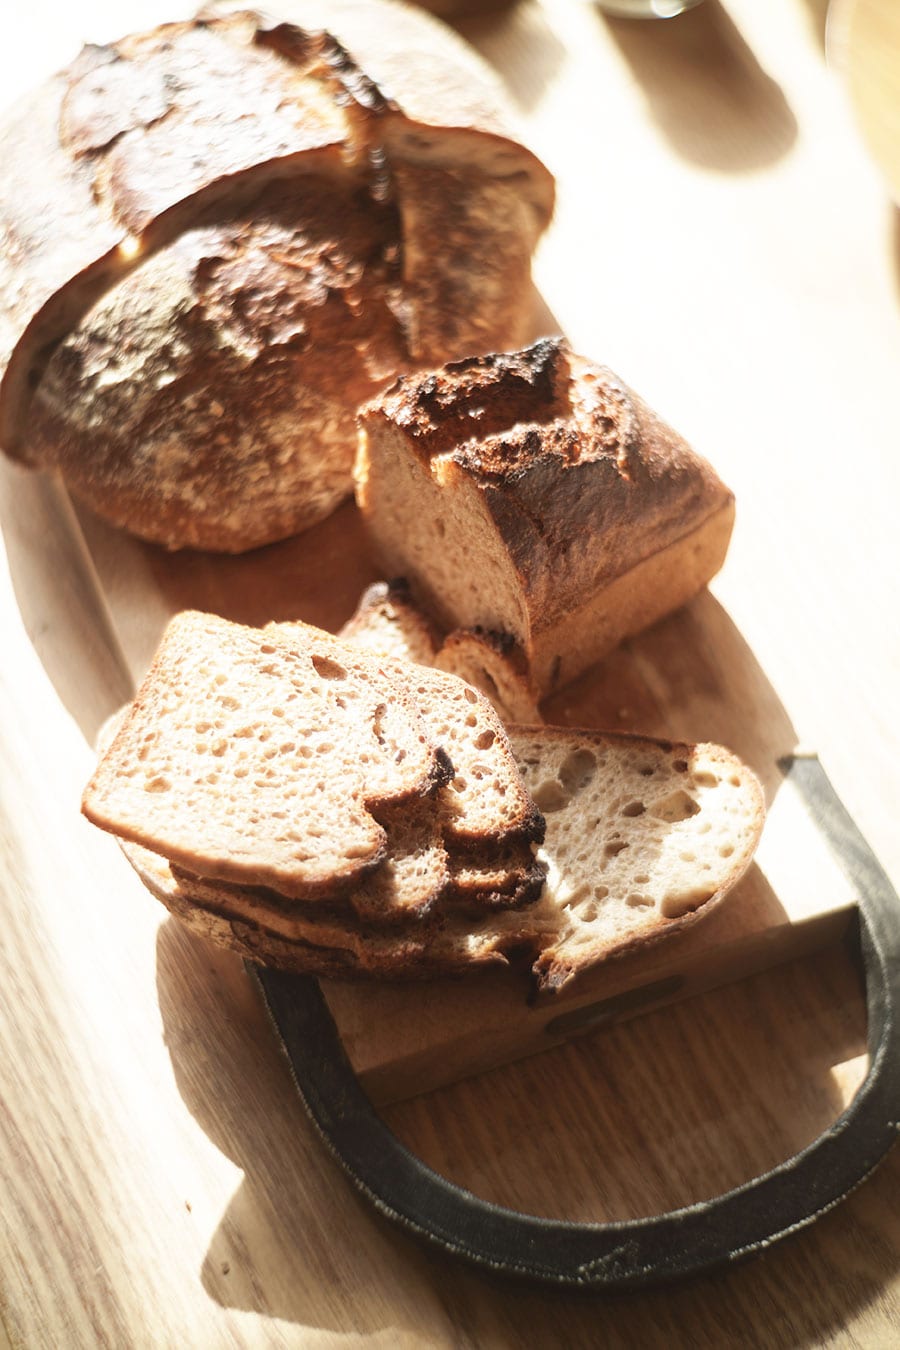 昨年オープンした「OKUZOE SEIPAN」のパンが最近のお気に入り。「小麦・塩・水だけで作られたシンプルなパンは、ごはんのように毎日食べられる、実直な美味しさ」(広沢さん)